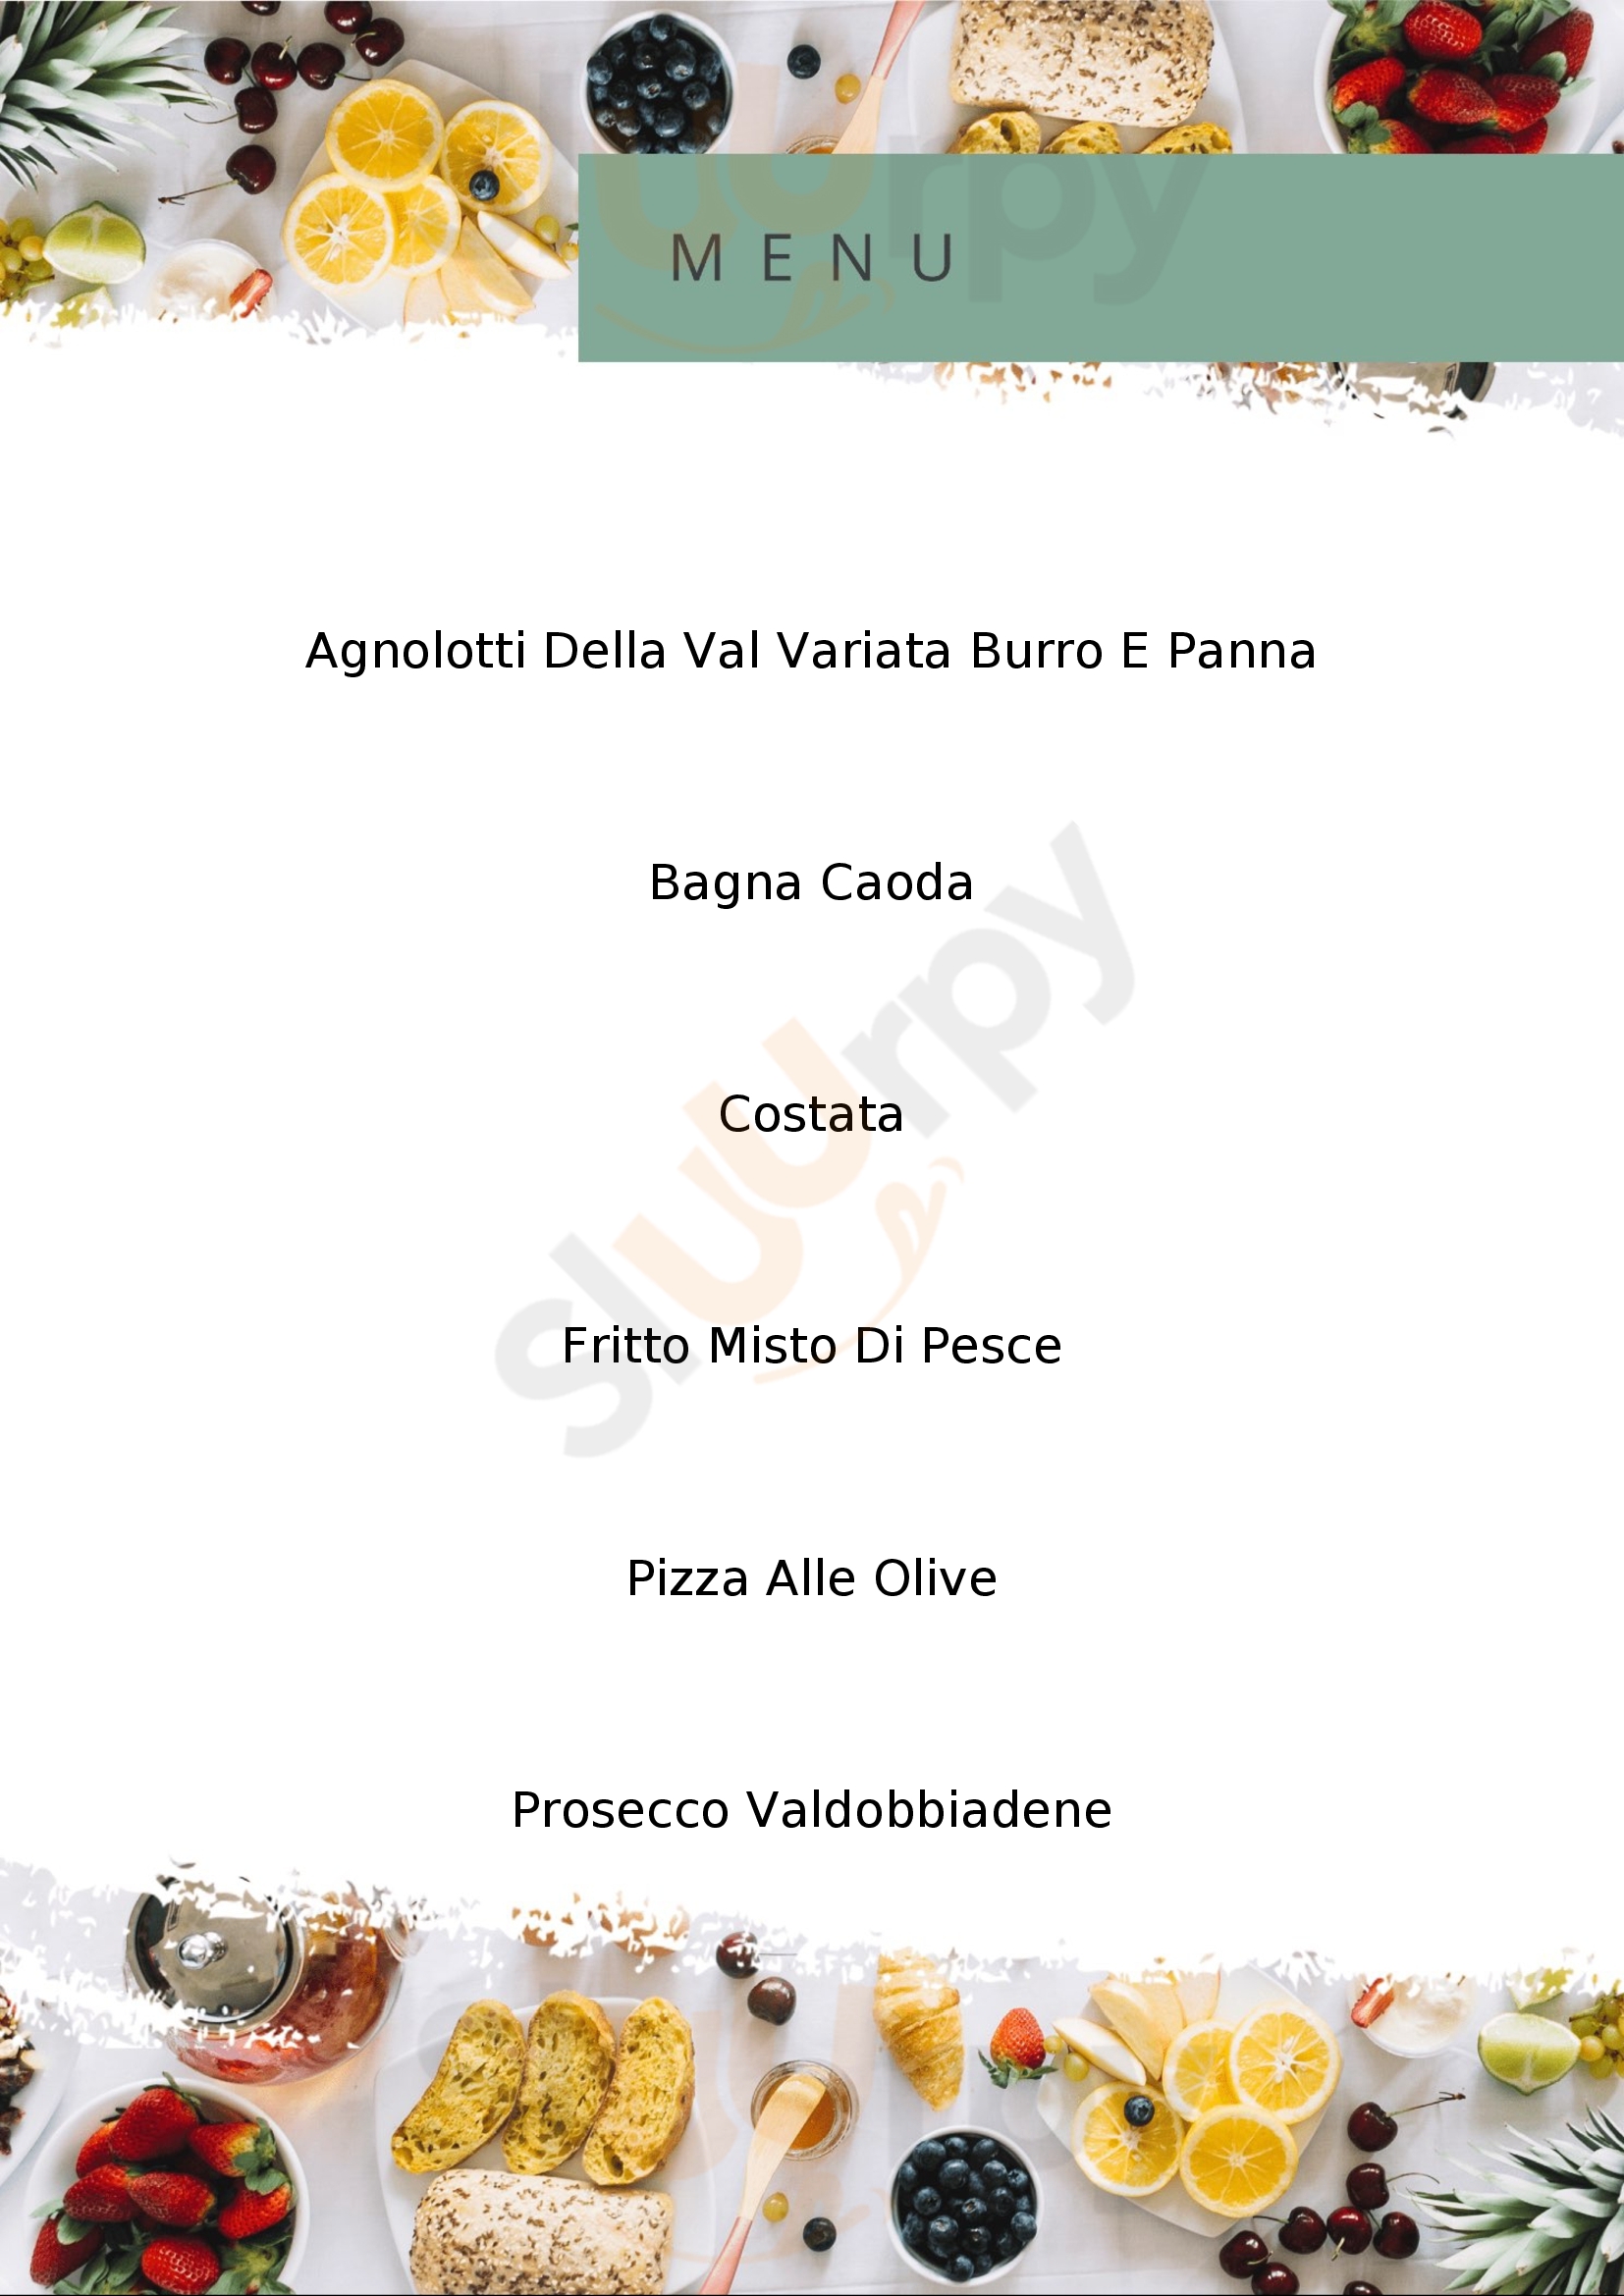 Mama Di Cavallo Mario Ditta Pizzeria Ristorante Cuneo menù 1 pagina